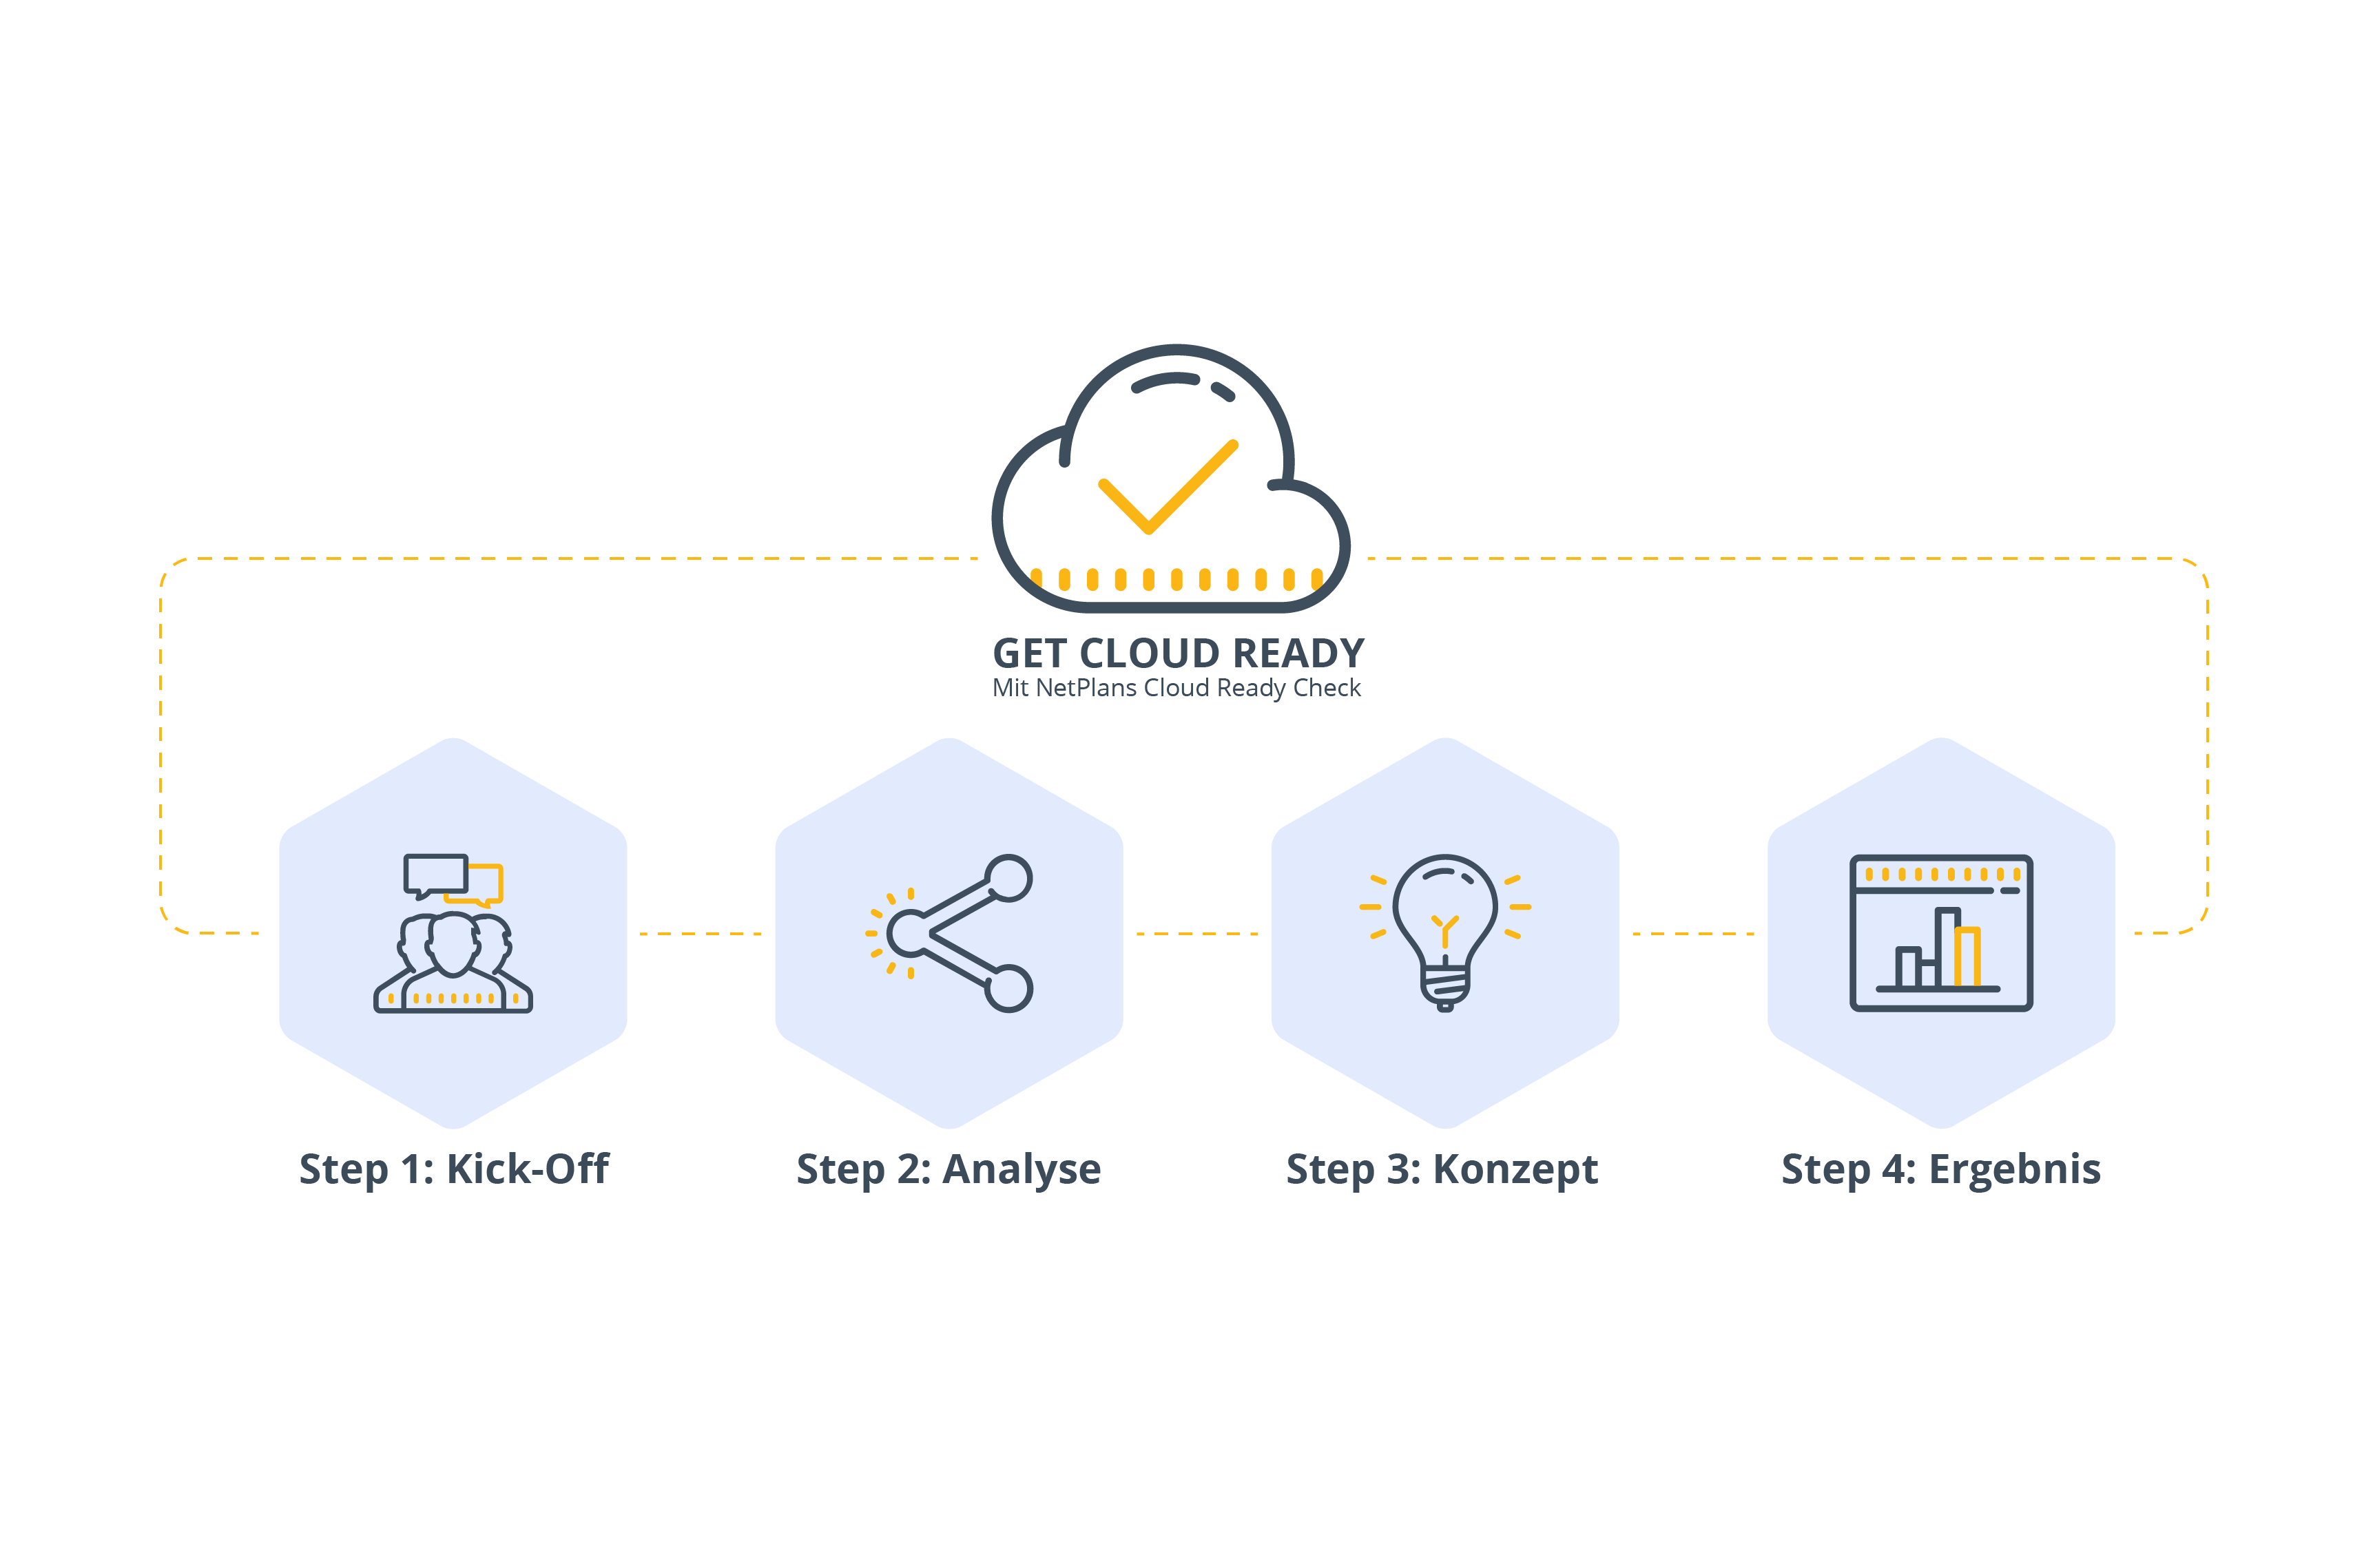 Infografik zum Cloud Ready Check mit vier Schritten: Kick-Off, Analyse, Konzept und Ergebnis